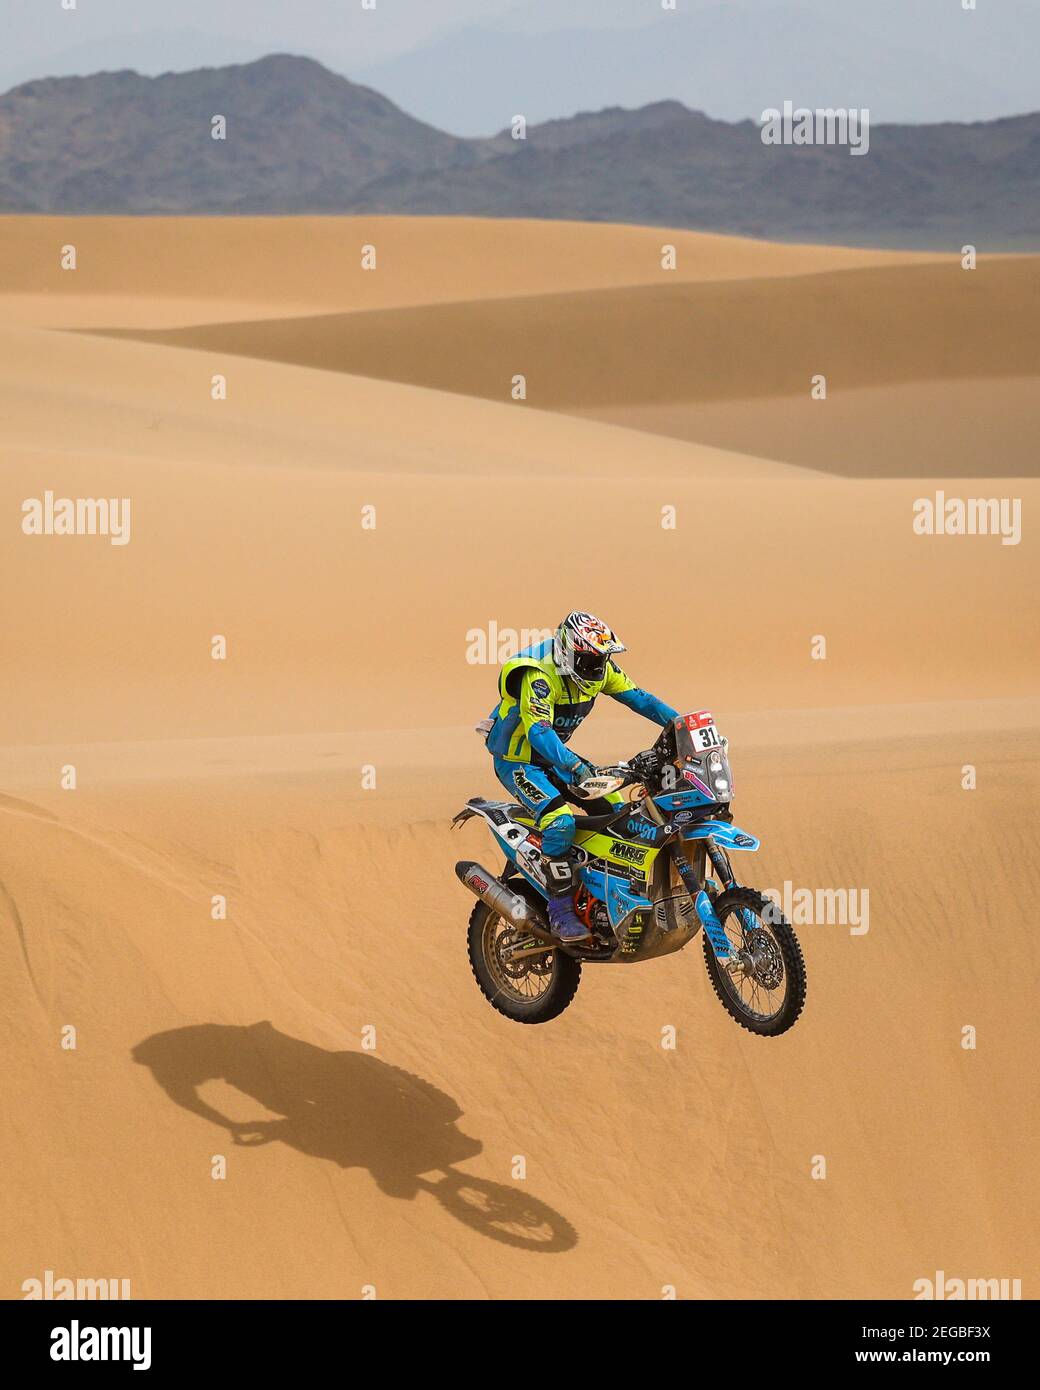 31 Michek Martin (cze), KTM, Orion - Moto Racing Group (MRG), Moto, Bike, azione durante l'undicesima tappa della Dakar 2021 tra al-‘Ula e Yanbu, in Arabia Saudita il 14 gennaio 2021 - Foto Florent Gooden / DPPI Foto Stock